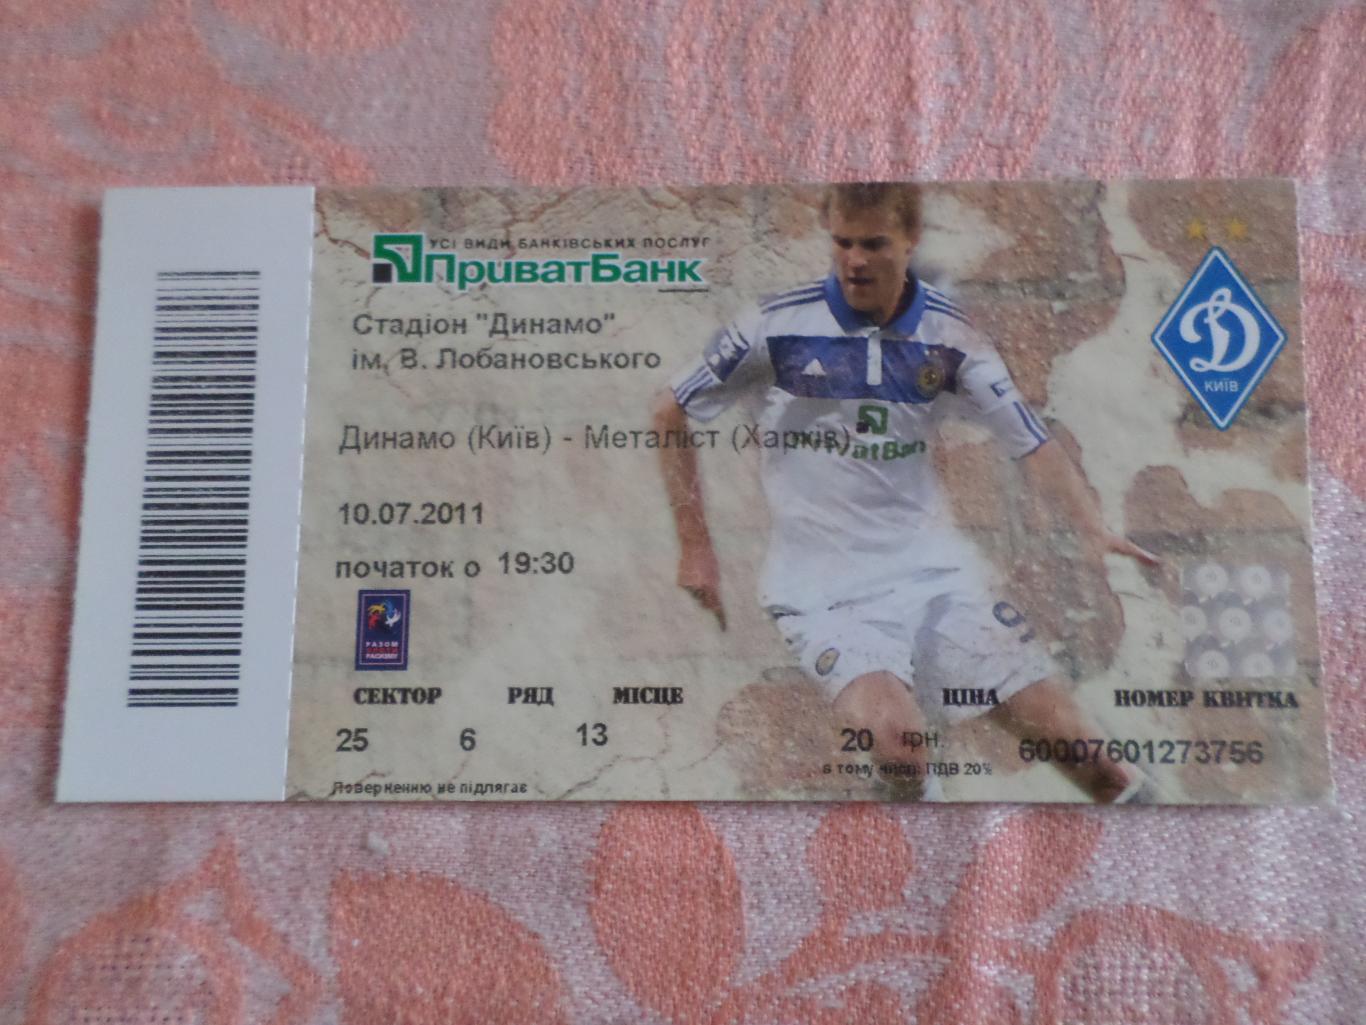 Билет к матчу Динамо Киев - Металлист Харьков 2011-2012 г